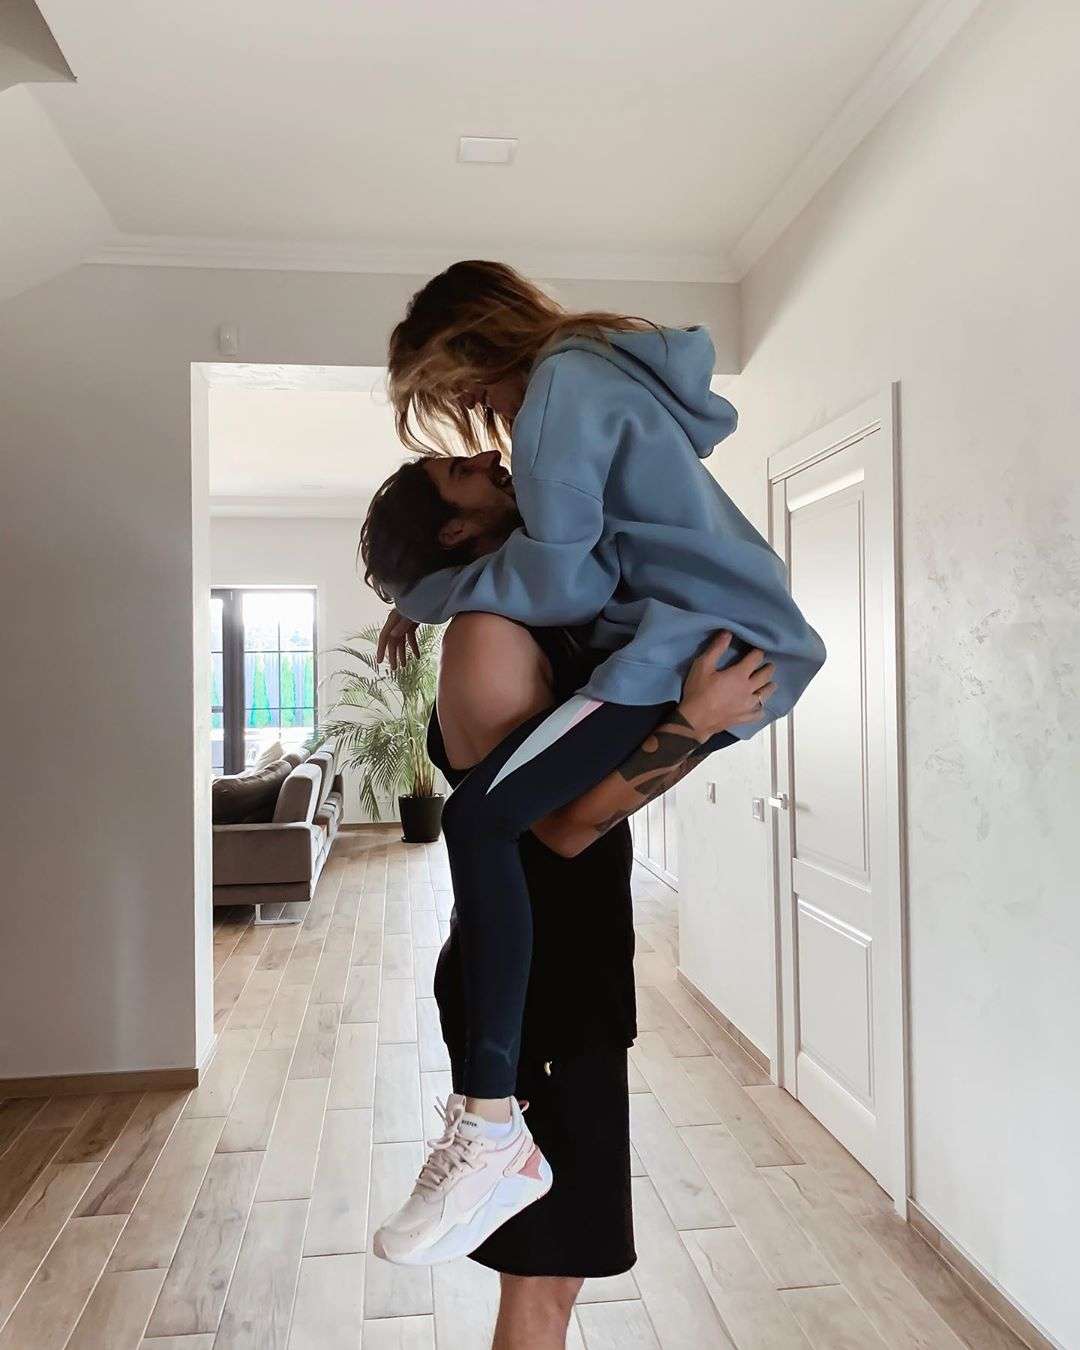 Любовное фото Нади Дорофеевой и Вовы Дантеса растрогало Instagram - фото 450235